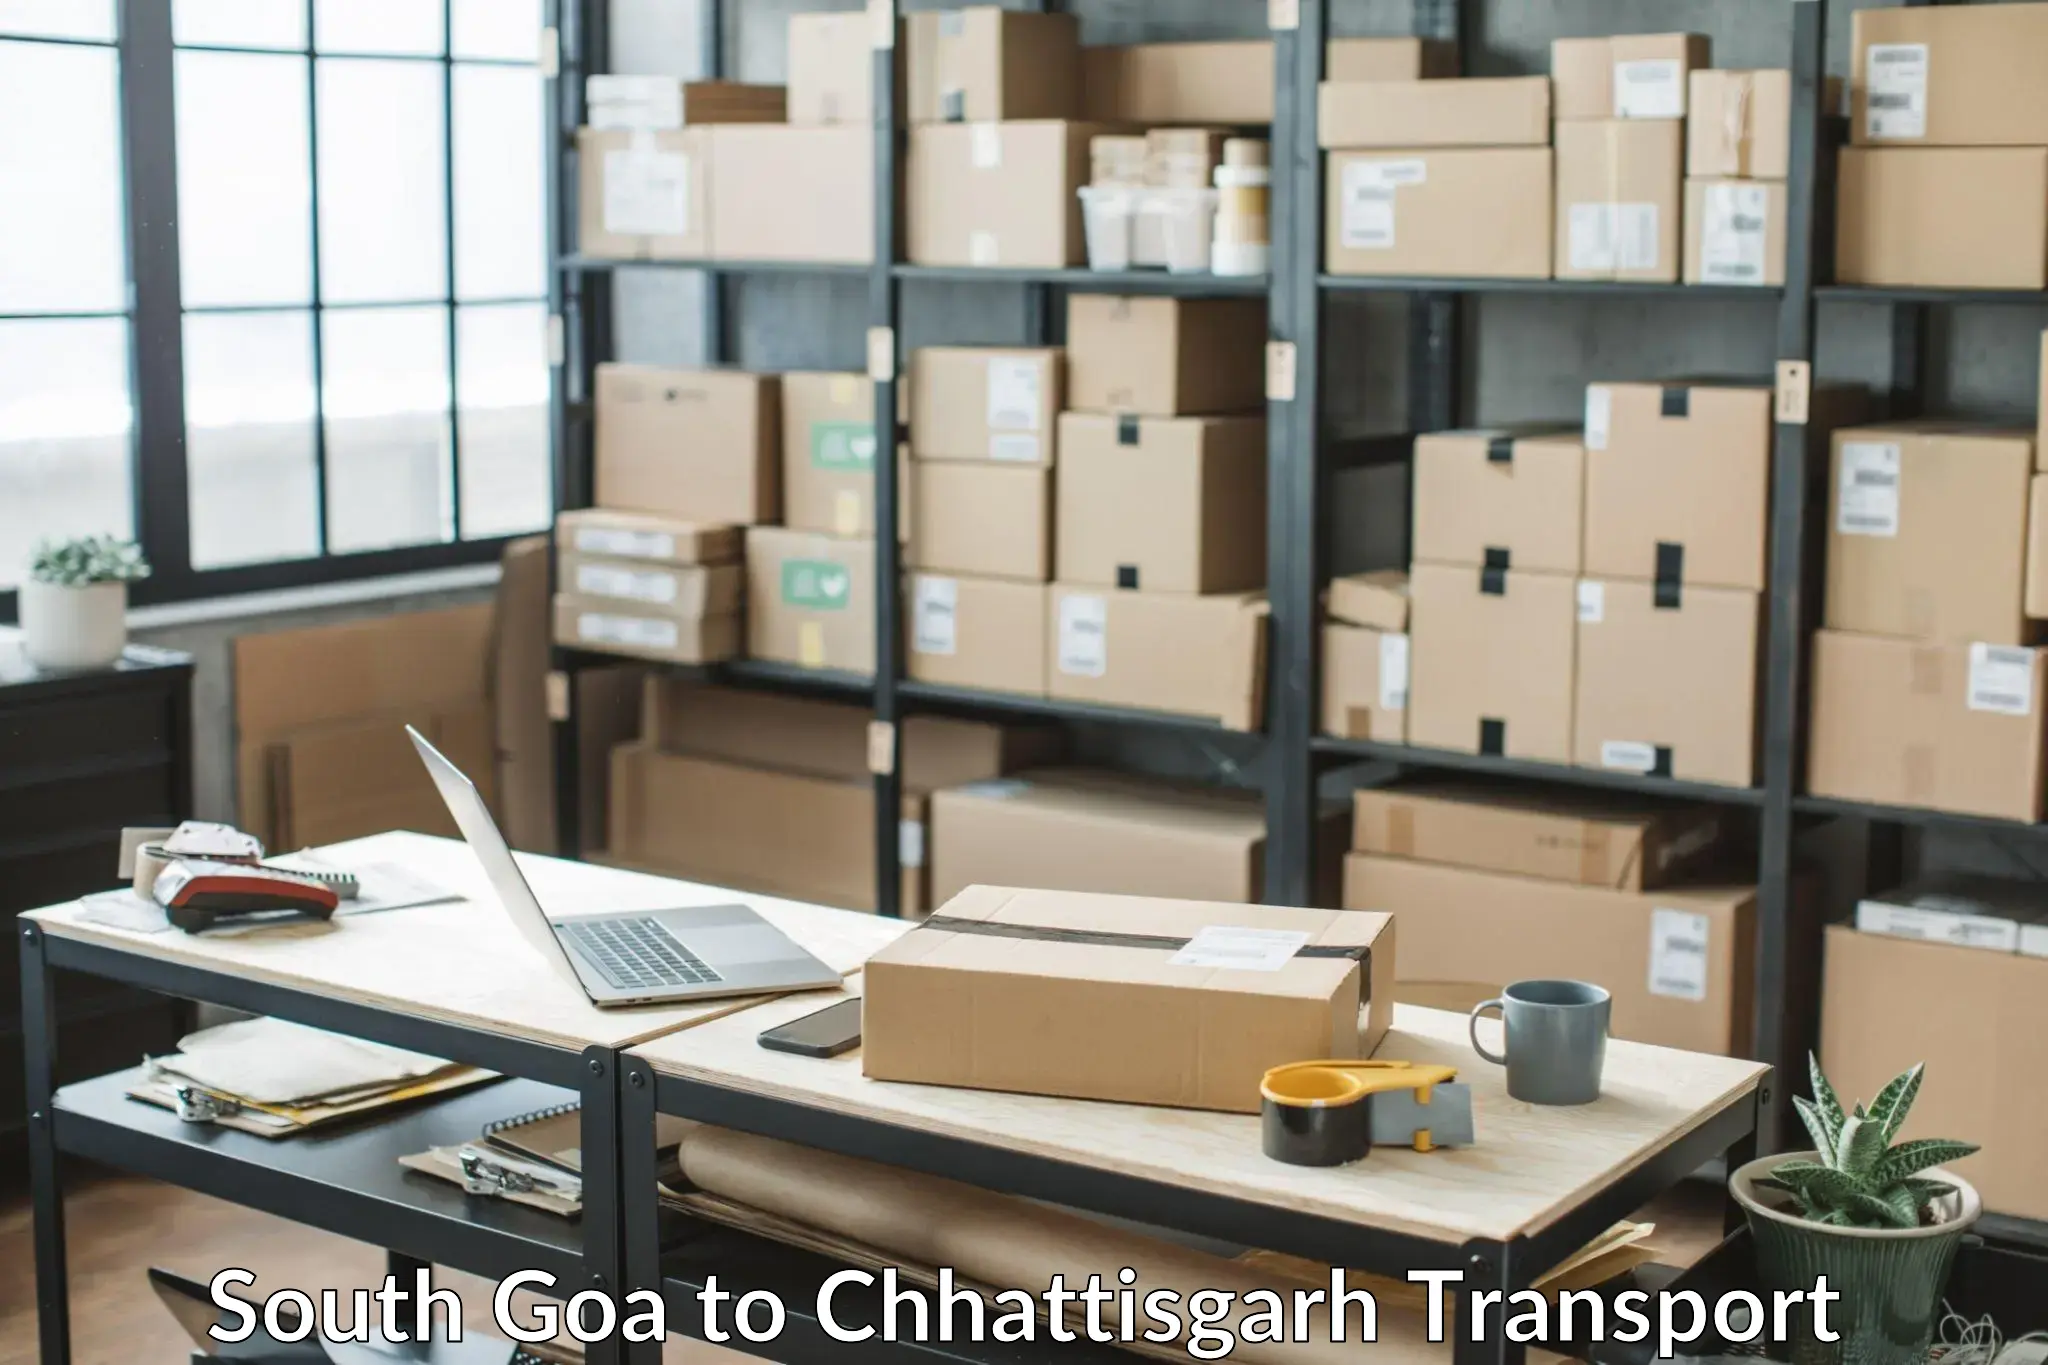 Air freight transport services South Goa to Raigarh Chhattisgarh